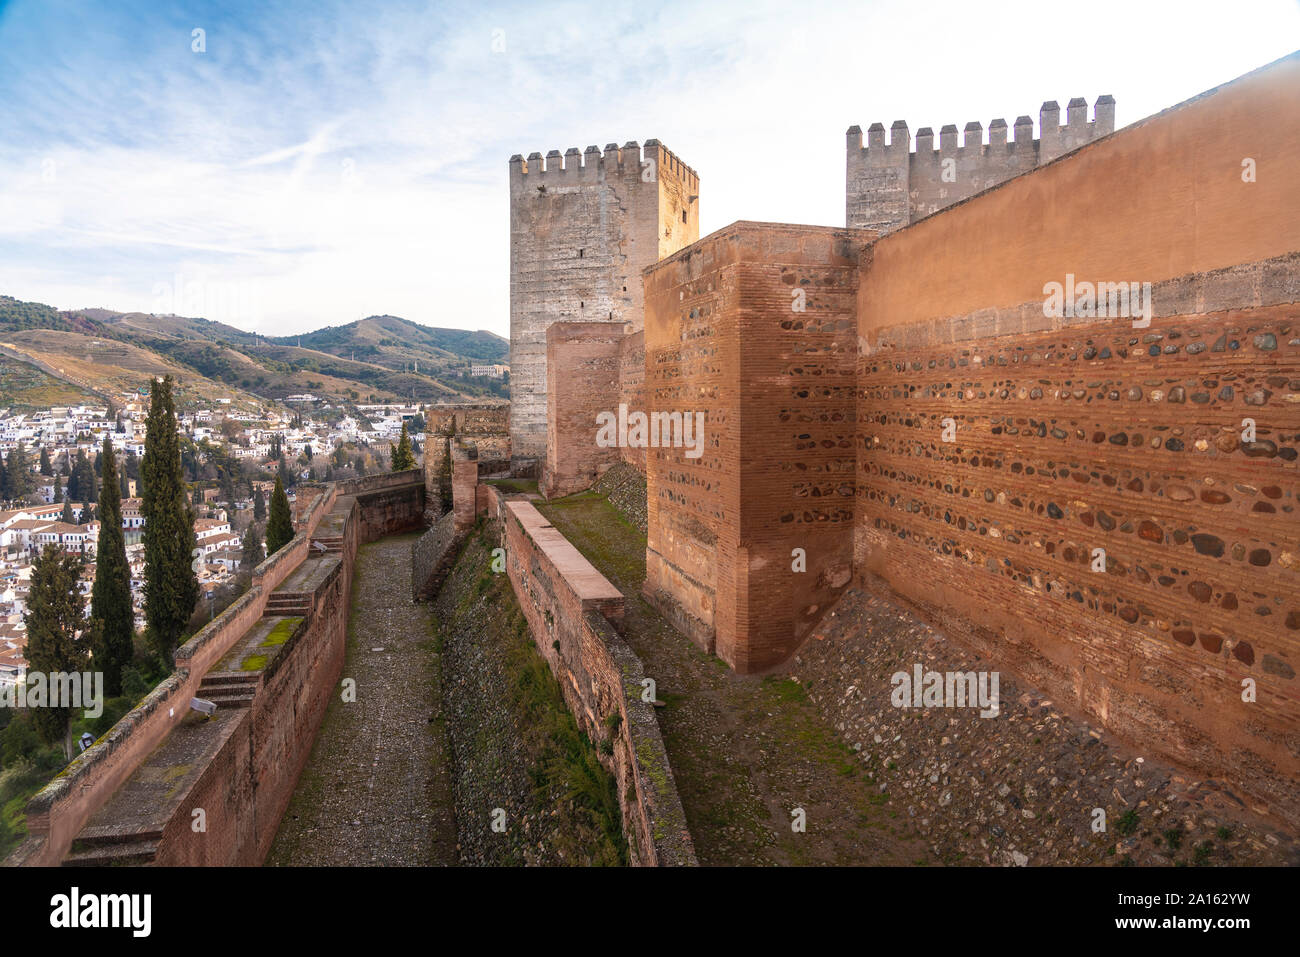 Alcazaba ruins at Alhambra, Granada, Spain Stock Photo